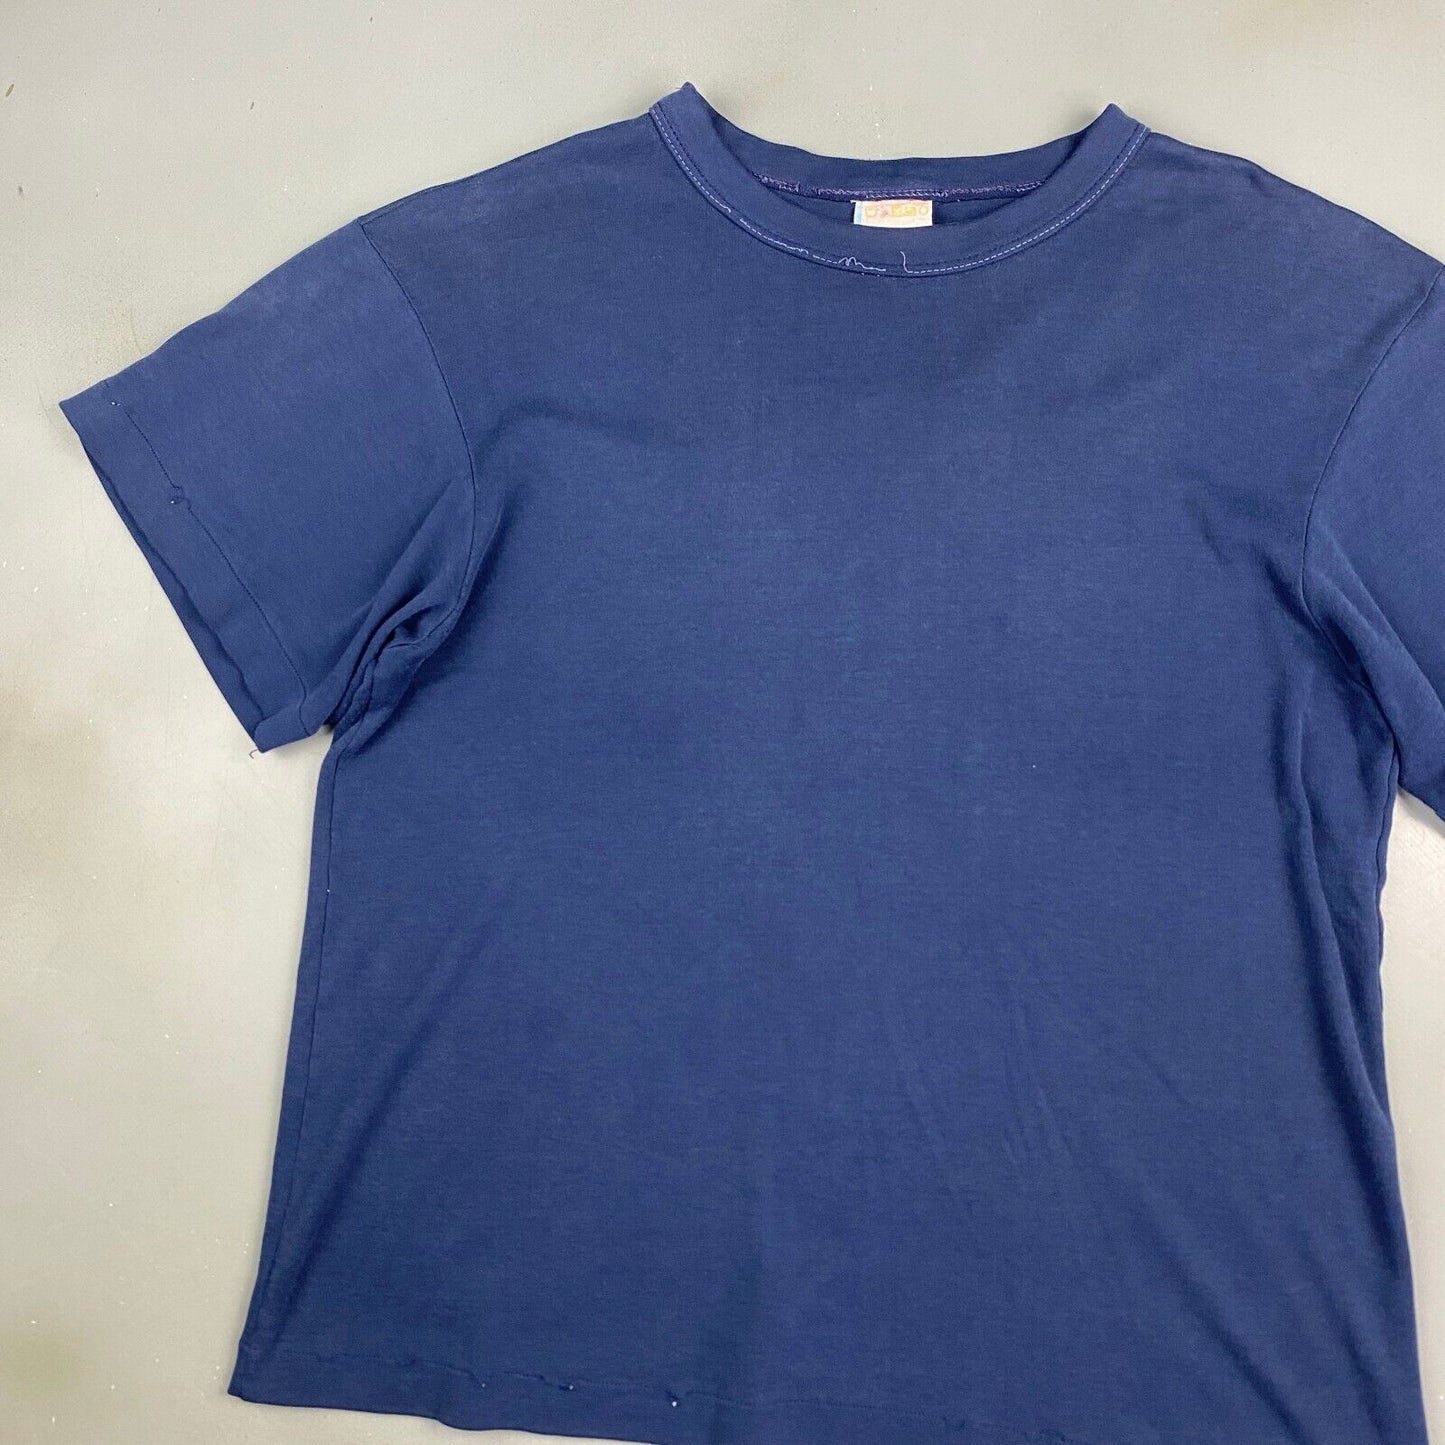 VINTAGE 90s Blank Navy T-Shirt sz Medium Men Adult